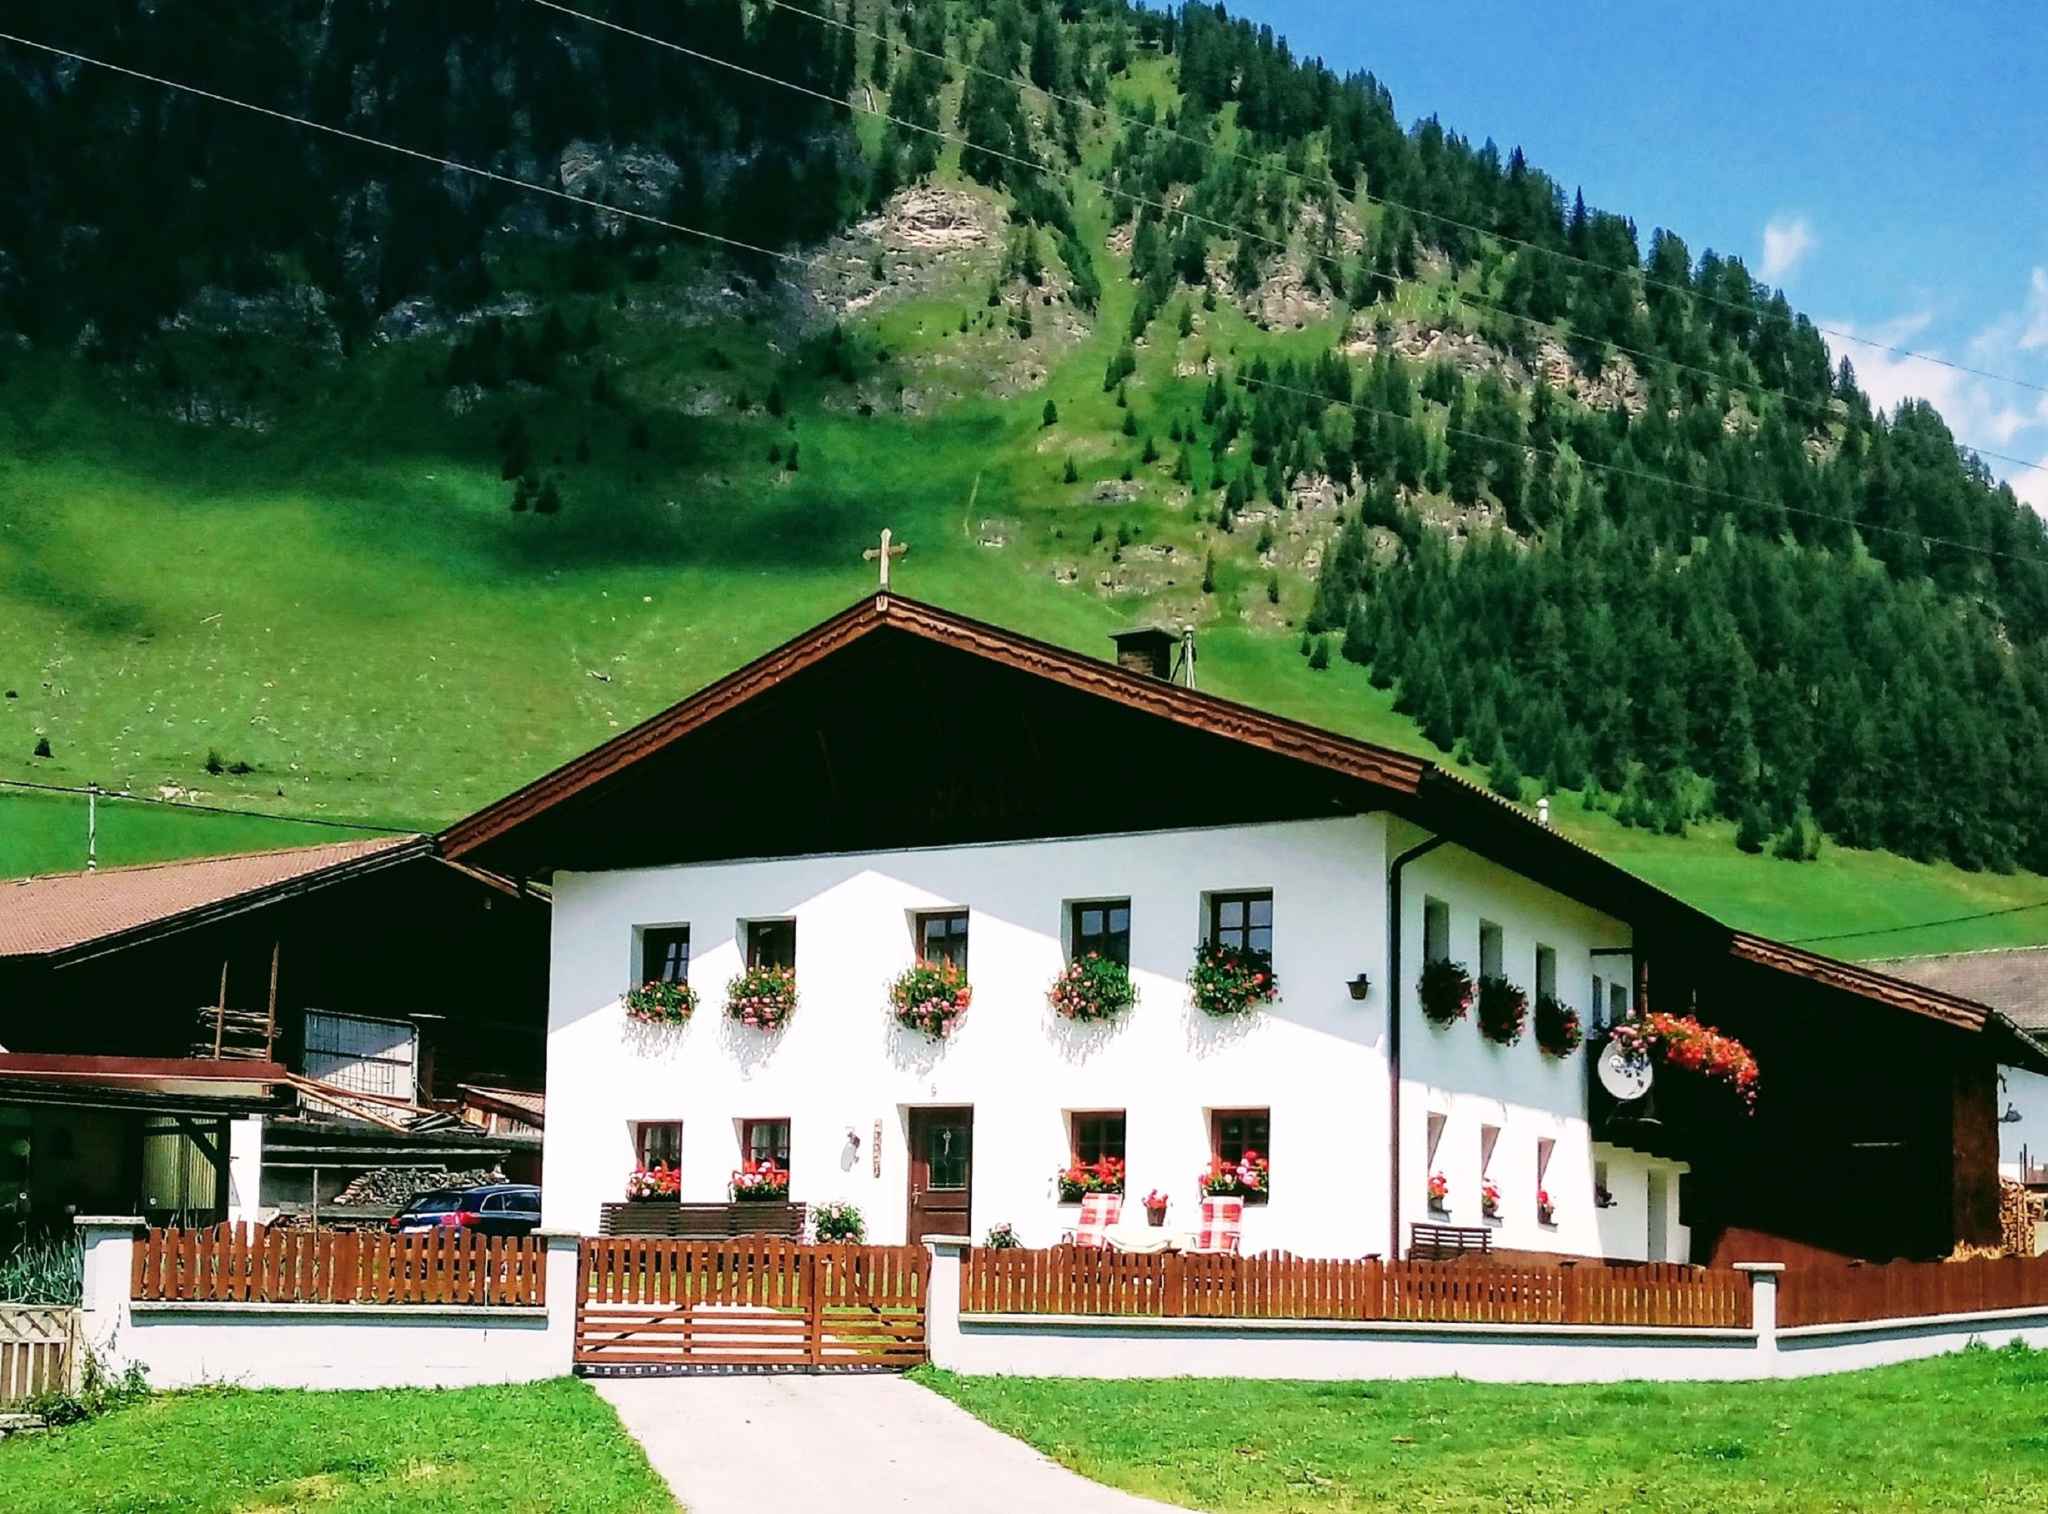 Ferienwohnung mit Internetverbindung und Kinderspi Bauernhof in Österreich